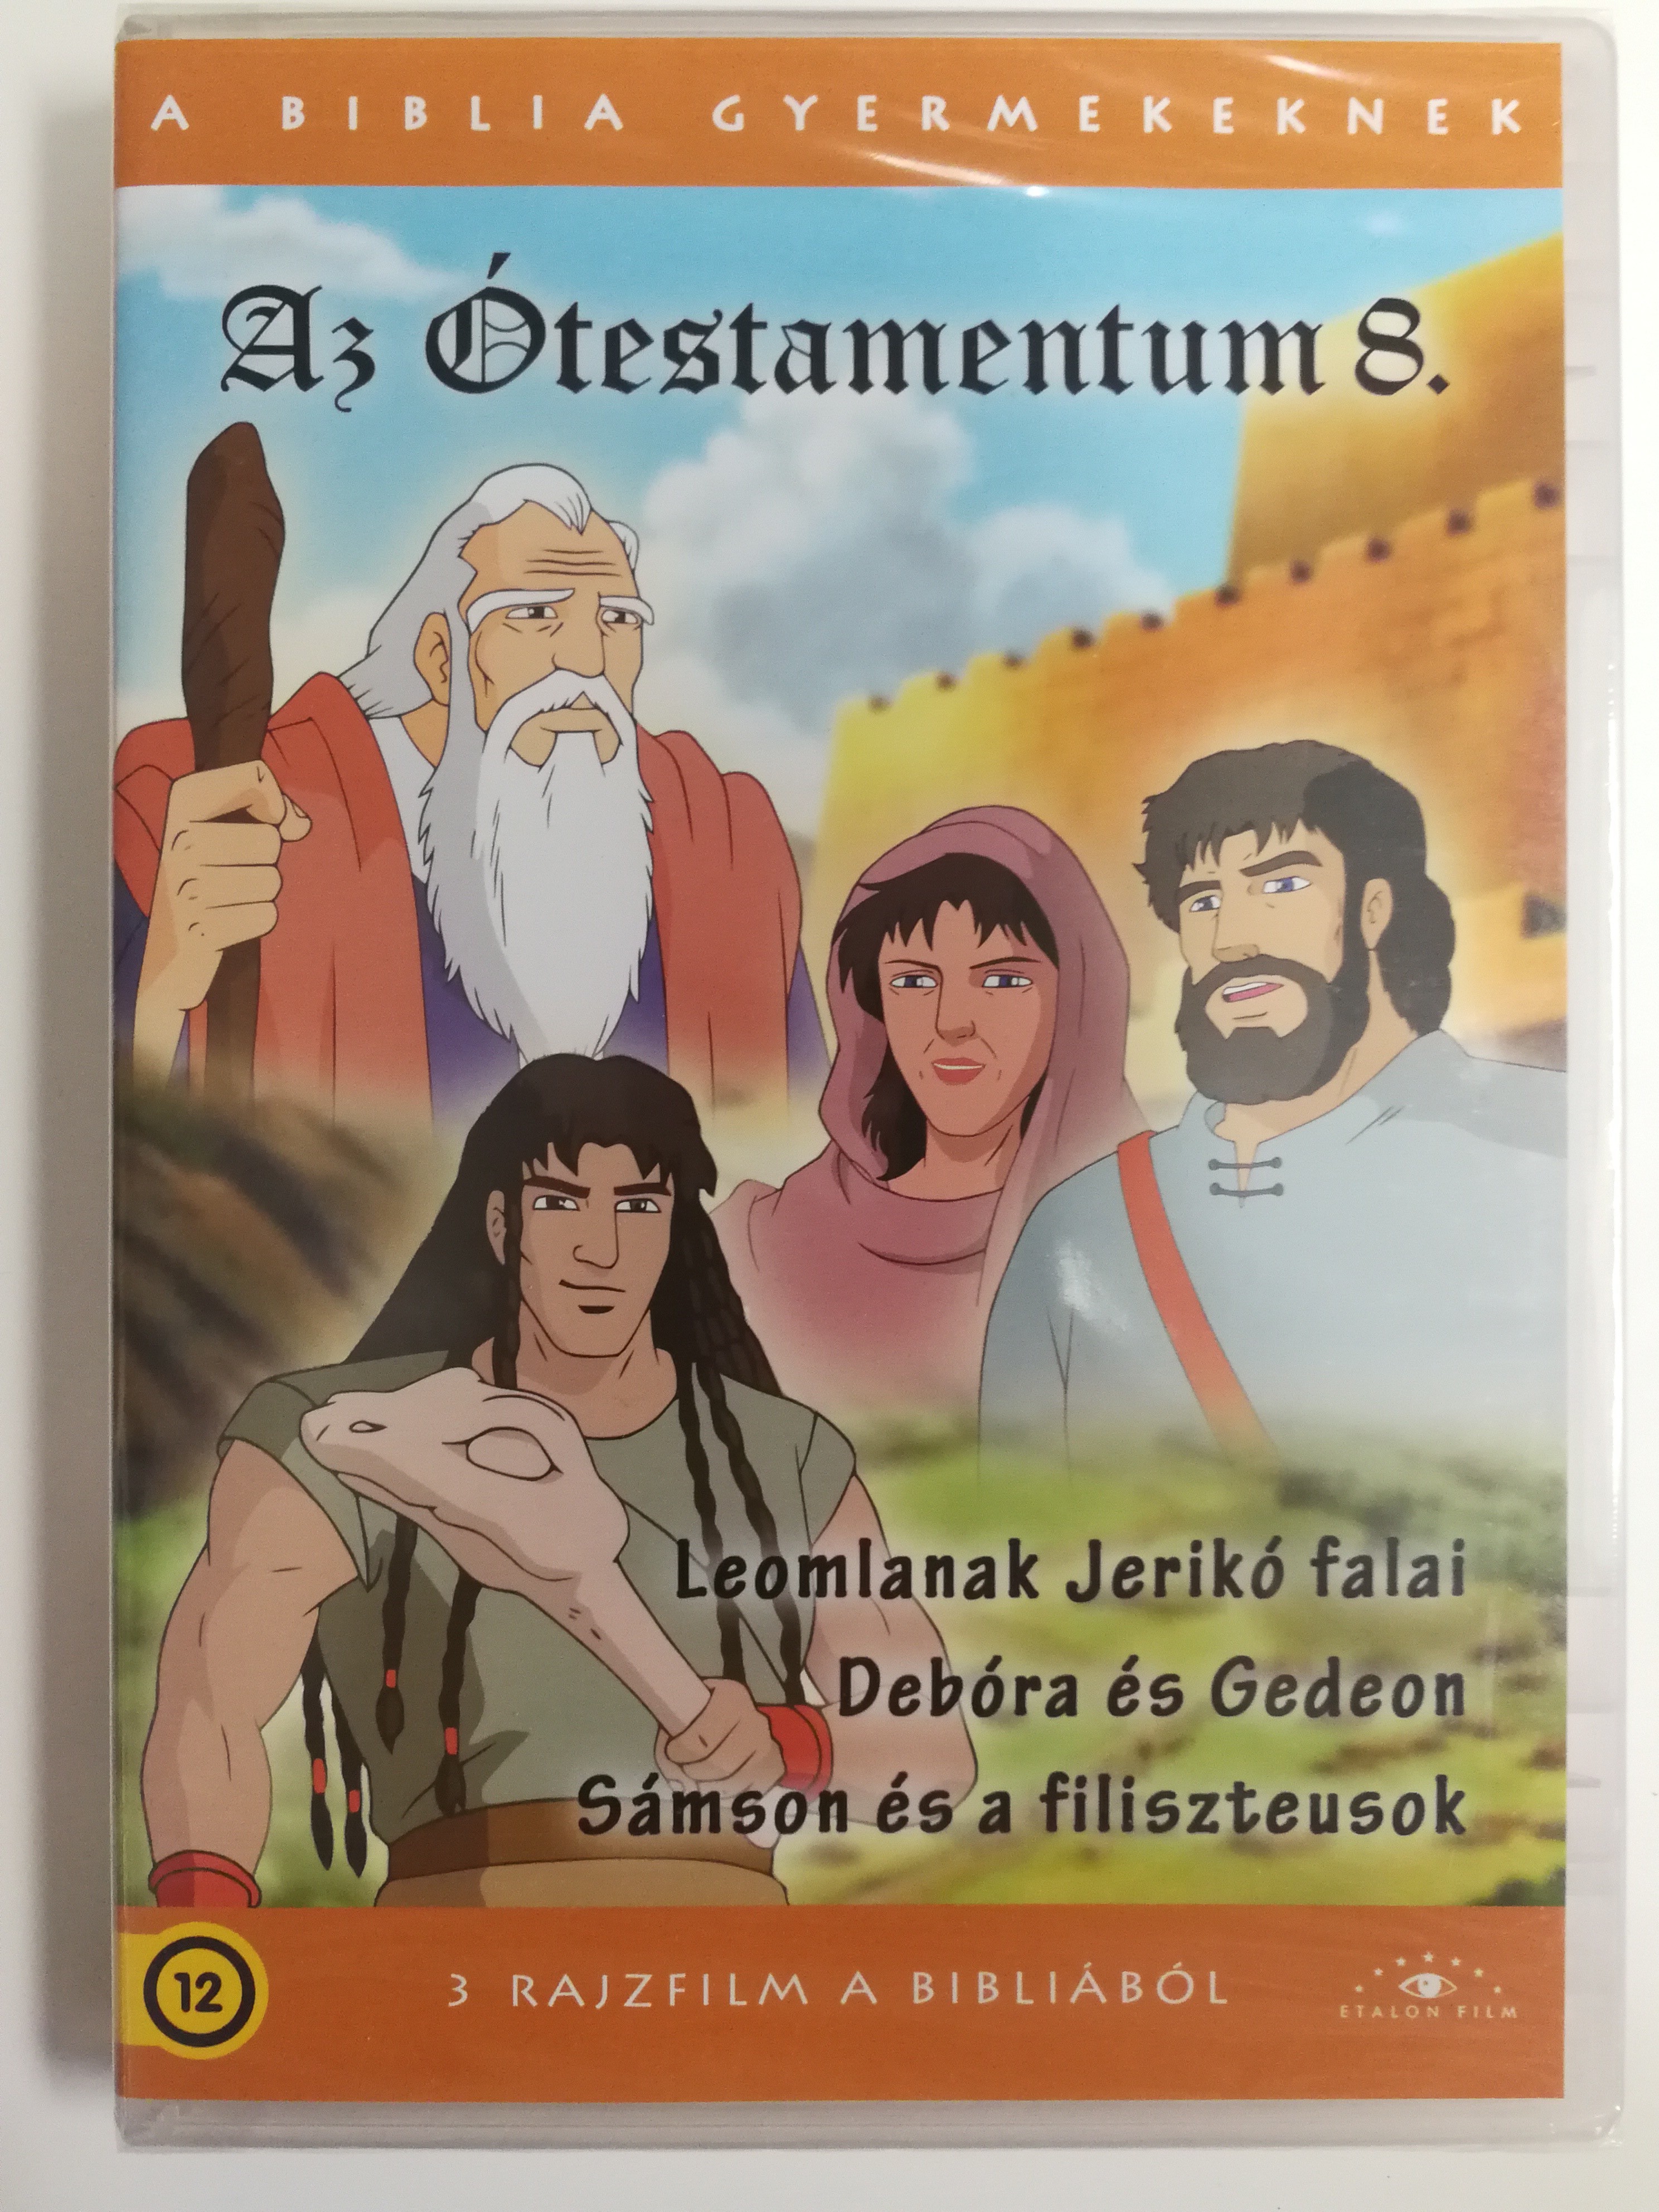 Il Vecchio Testamento 8 DVD The Old testament 8 1